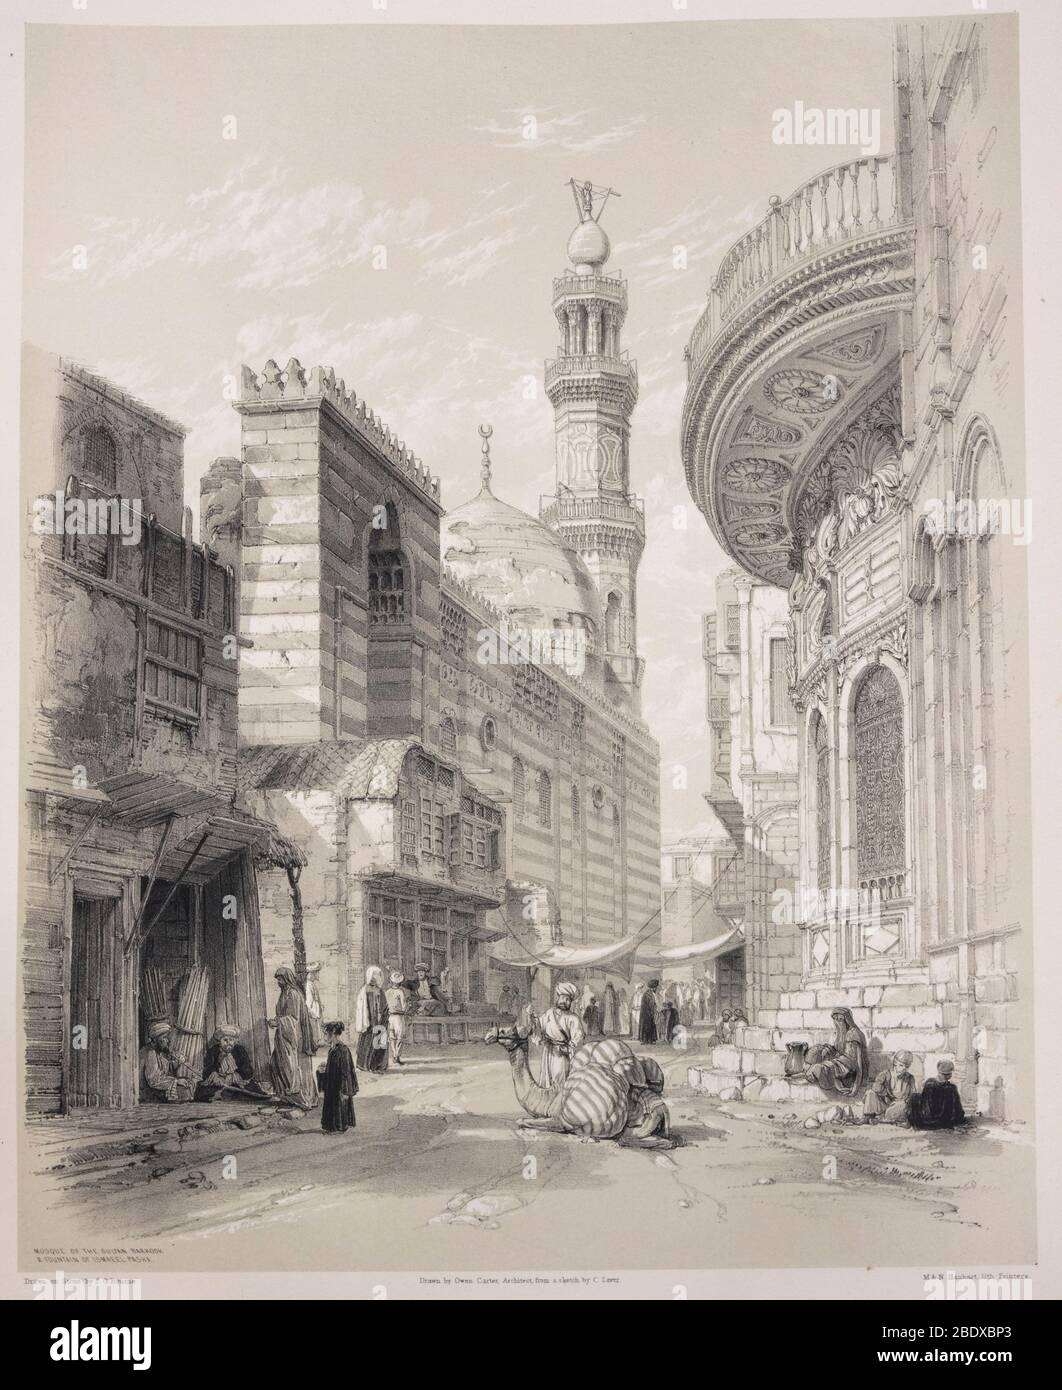 Mosquée du Sultan Barkook et fontaine d'Ismaeel pasha, Robert Hay, illustrations du Caire, Londres, 1840 Banque D'Images